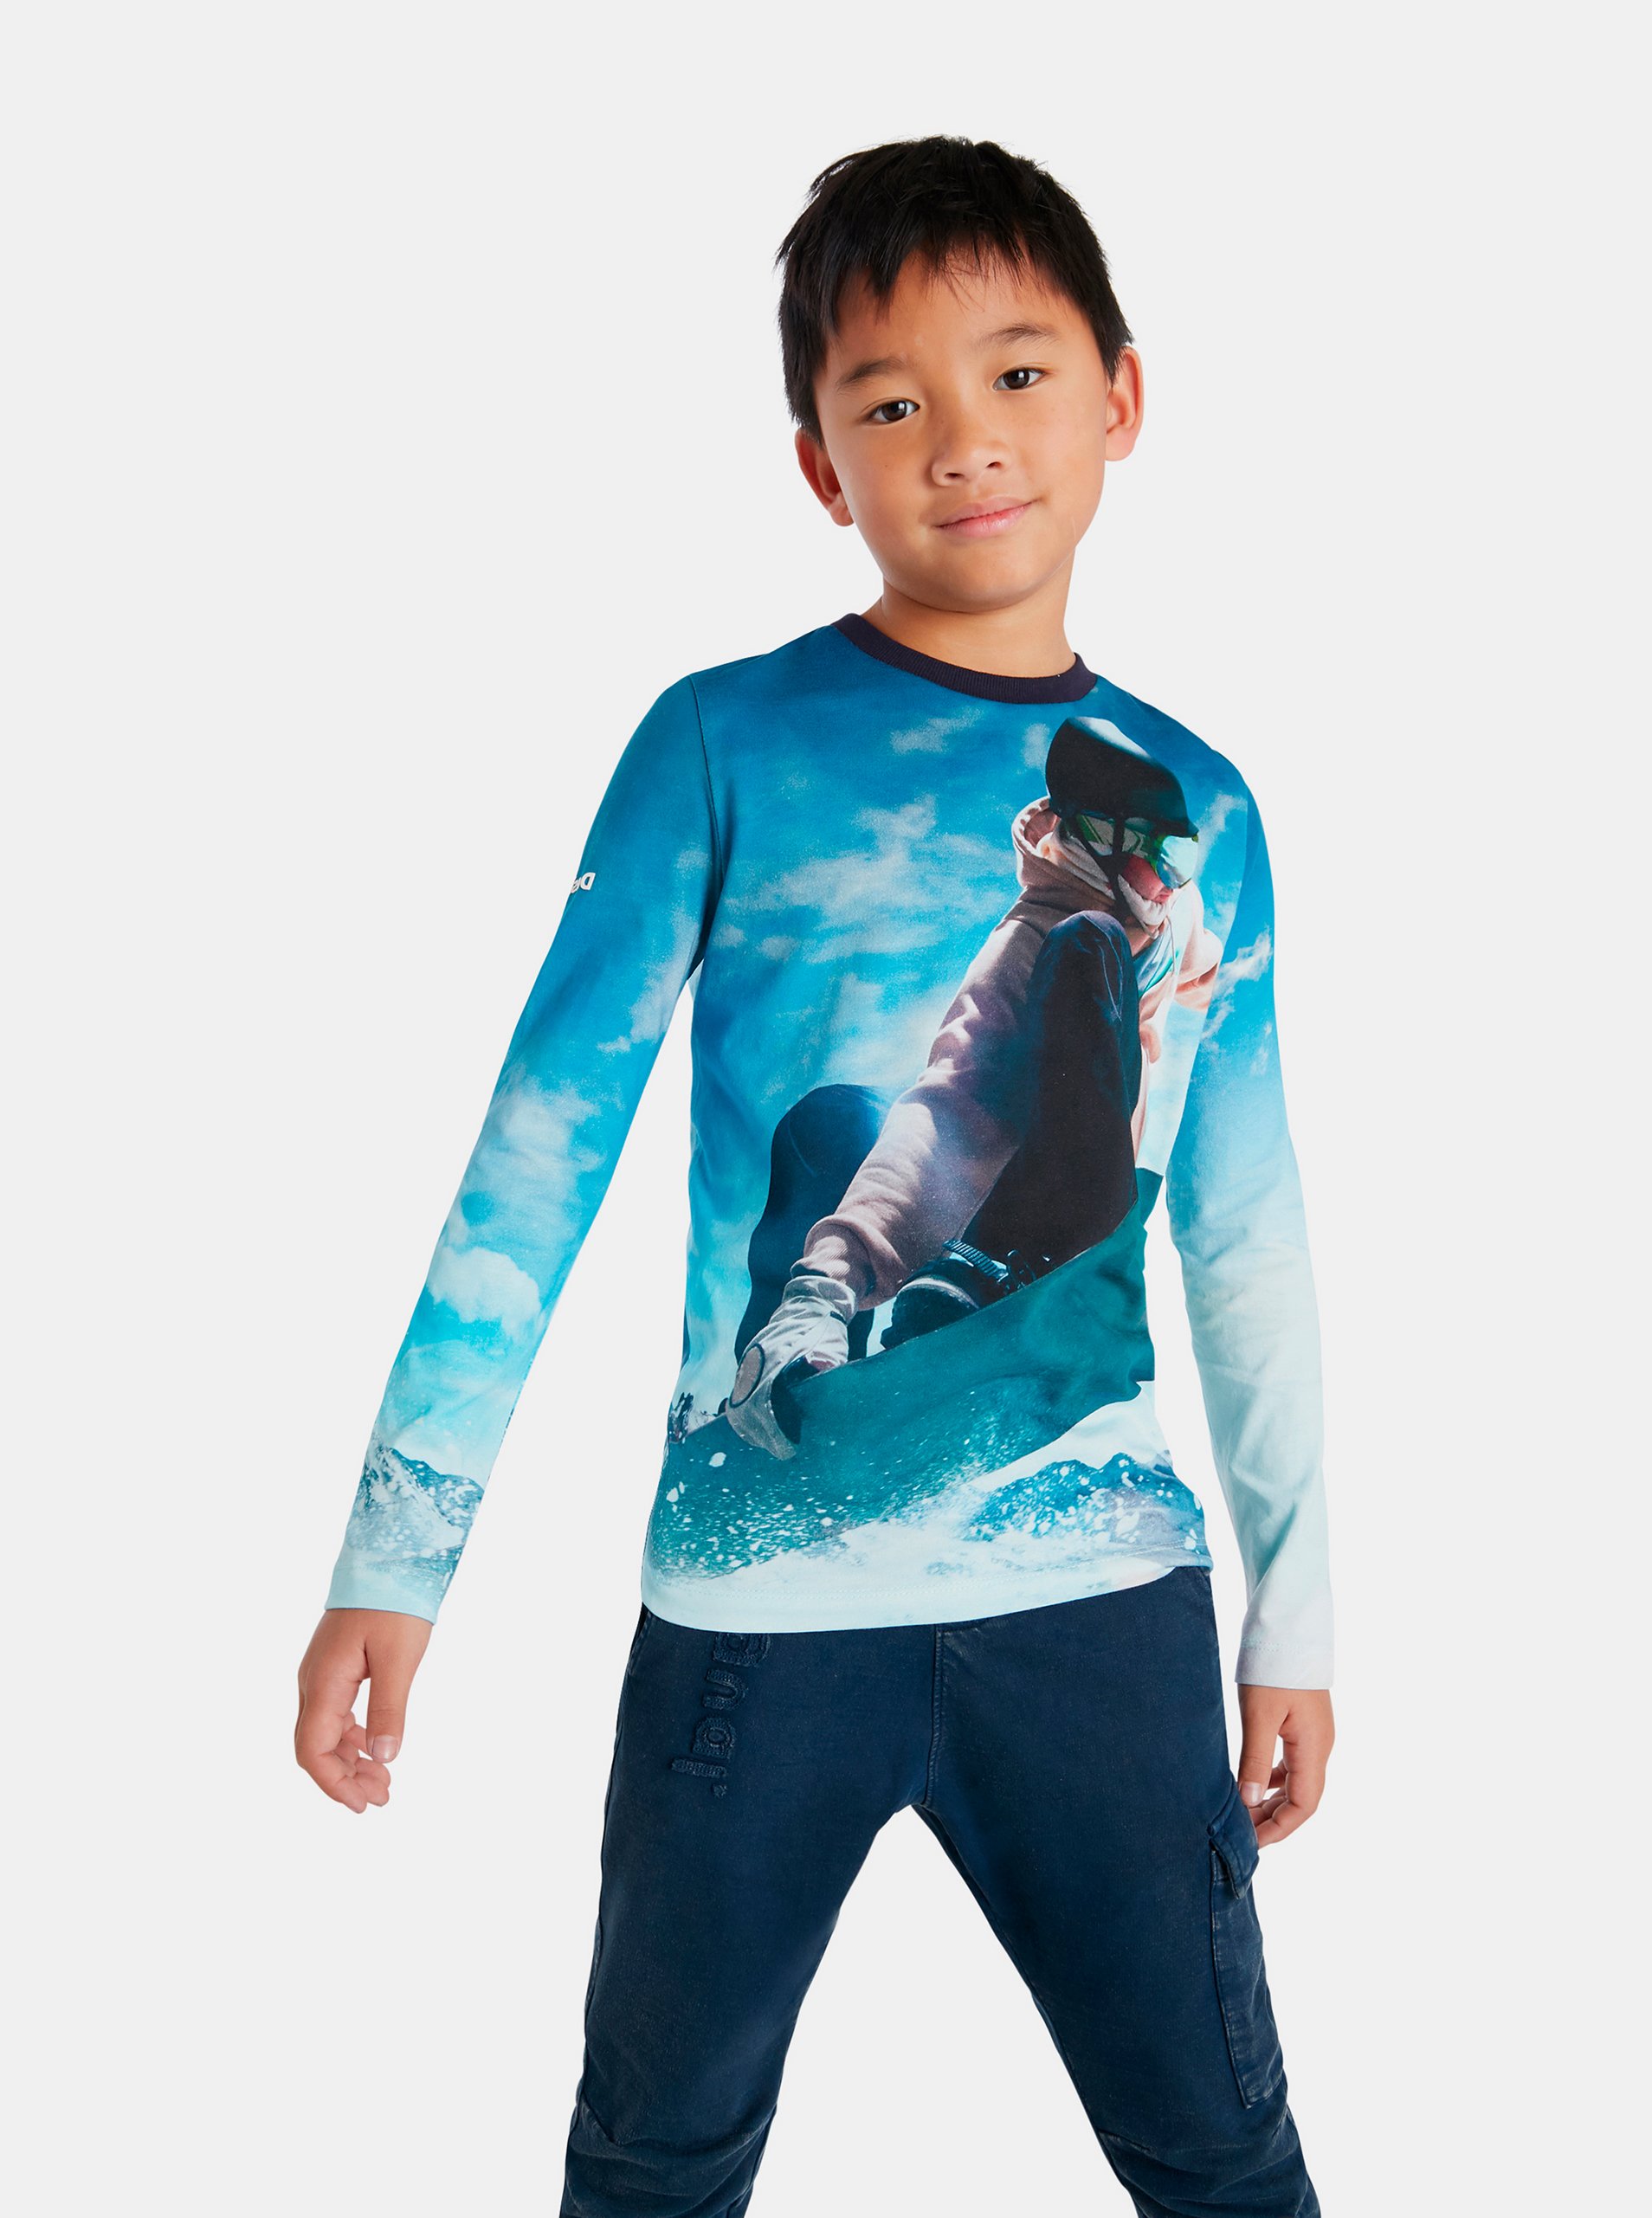 Lacno Modré chlapčenské tričko s motívom Desigual Snow